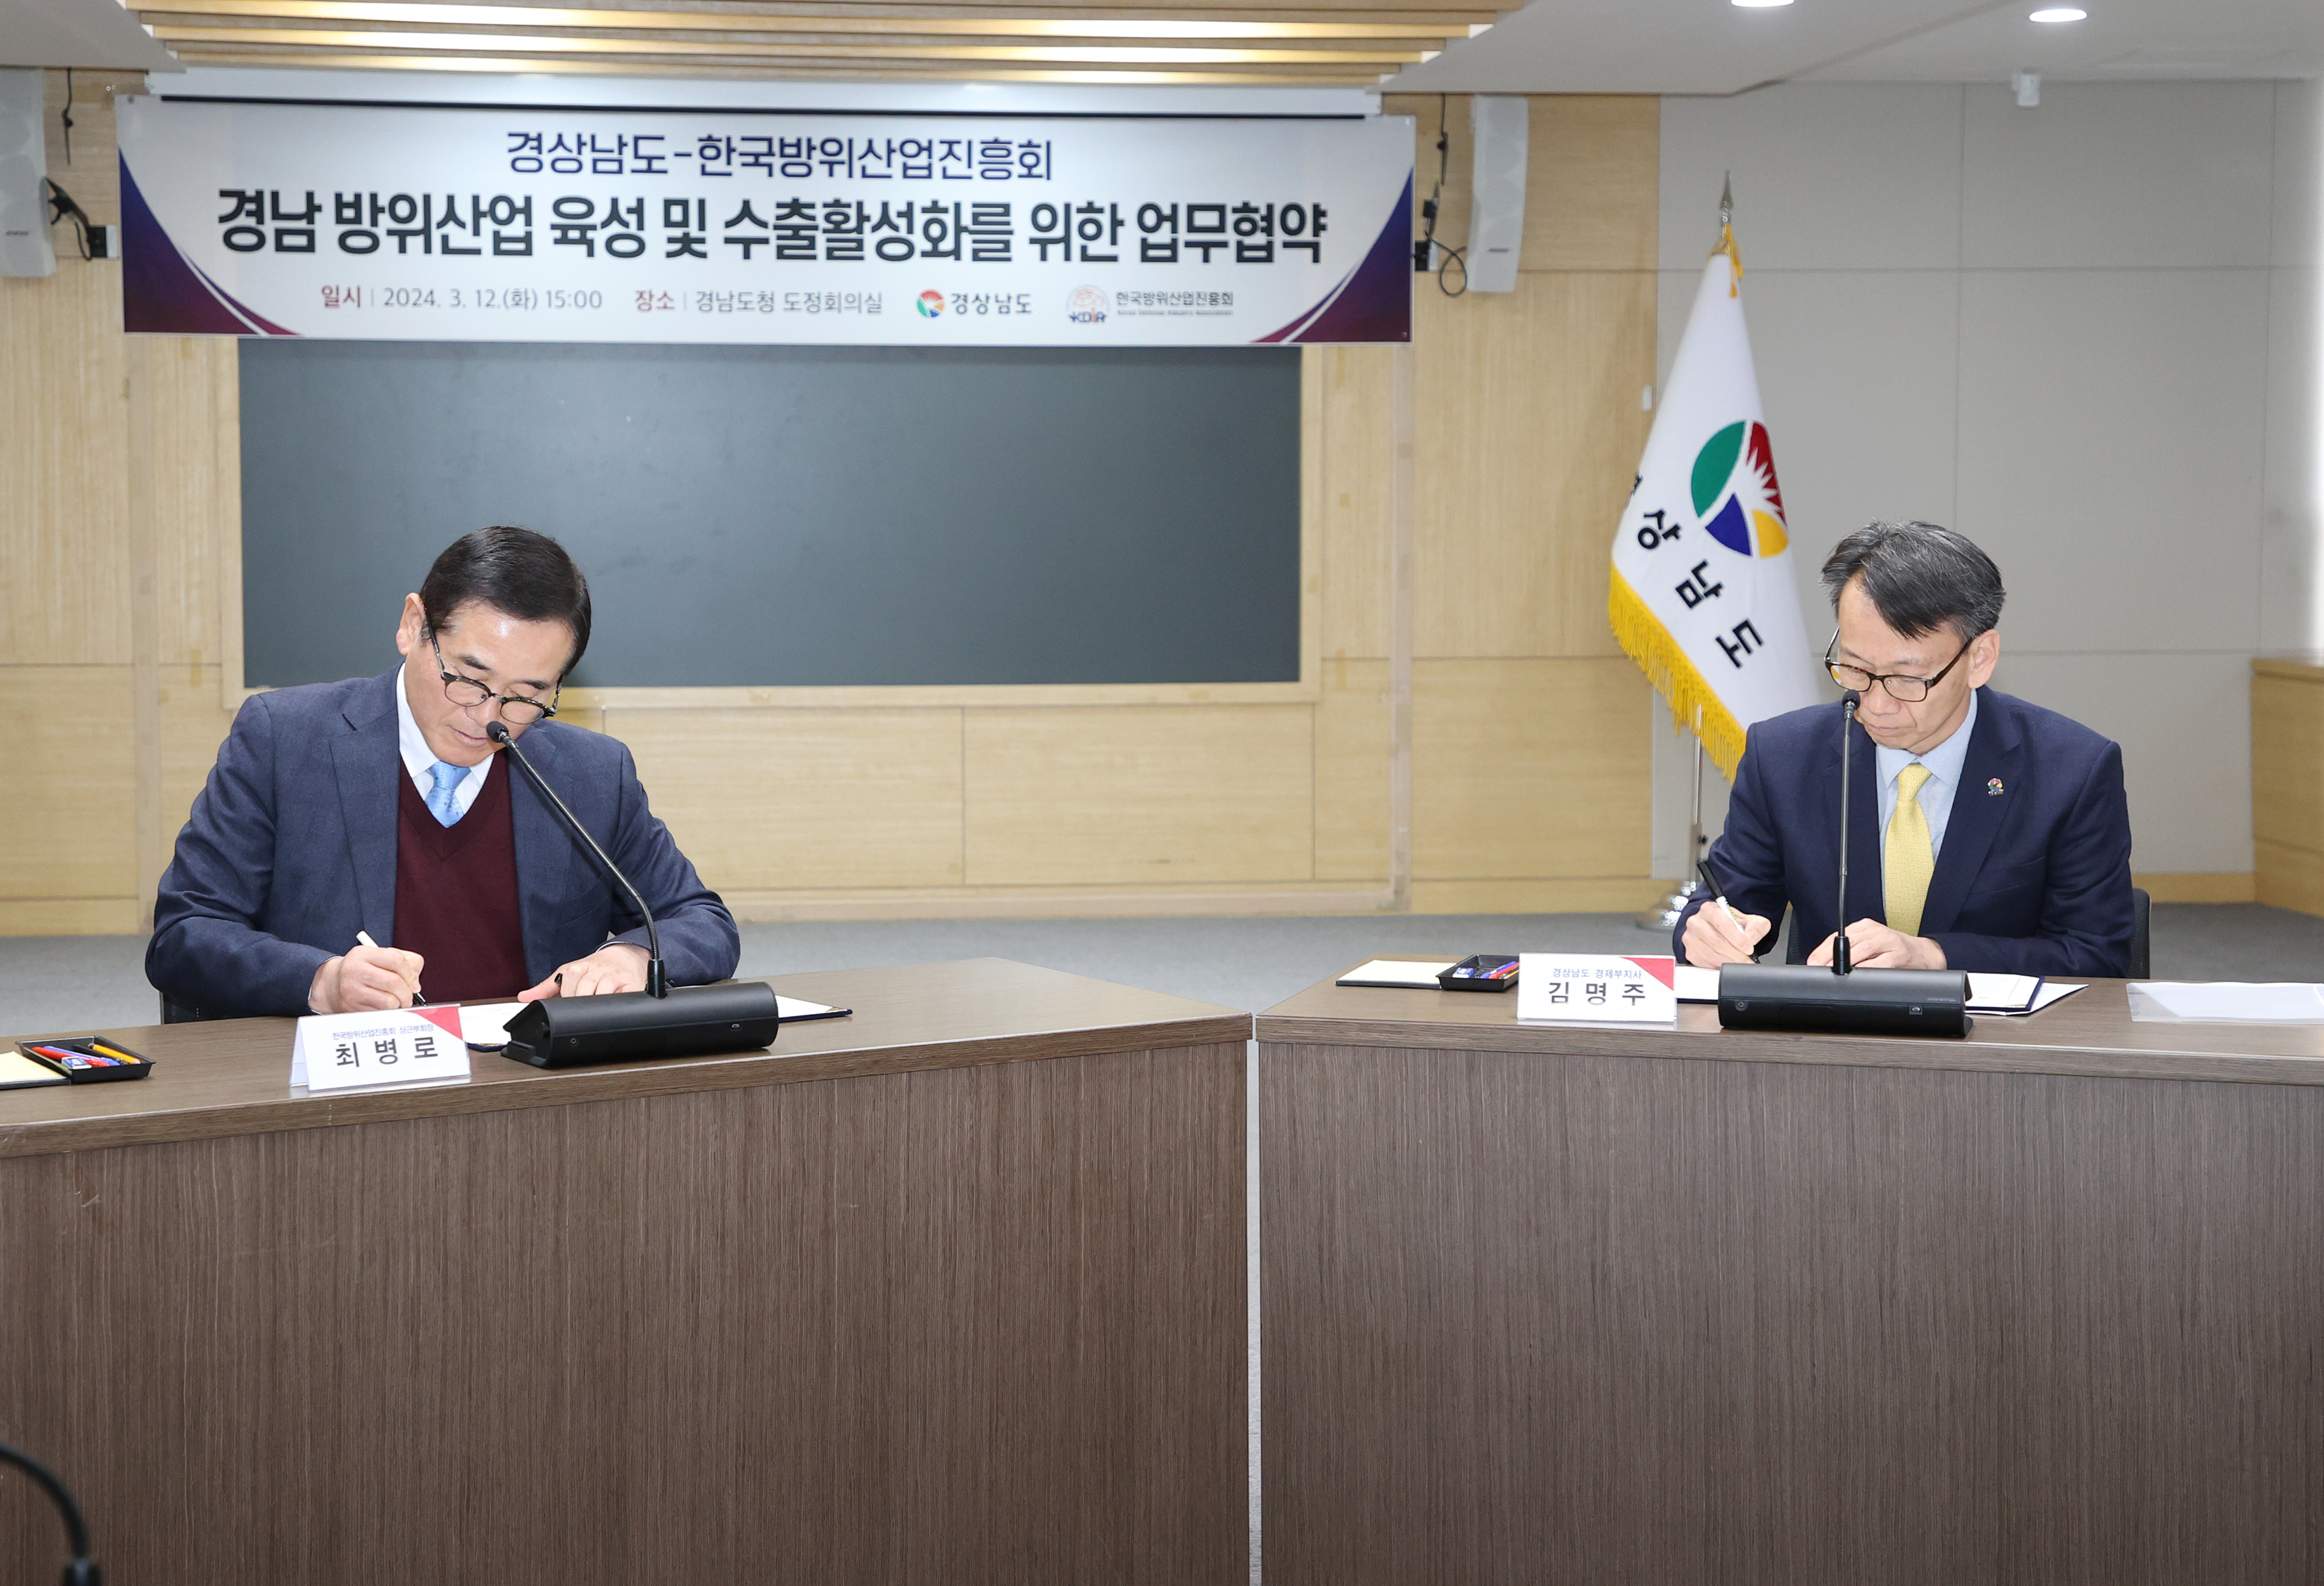 Tỉnh Gyeongnam và Hiệp hội Xúc tiến Công nghiệp Quốc phòng Hàn Quốc ký thỏa thuận hợp tác nhằm củng cố và thúc đẩy xuất khẩu ngành công nghiệp quốc phòng của tỉnh의 파일 이미지